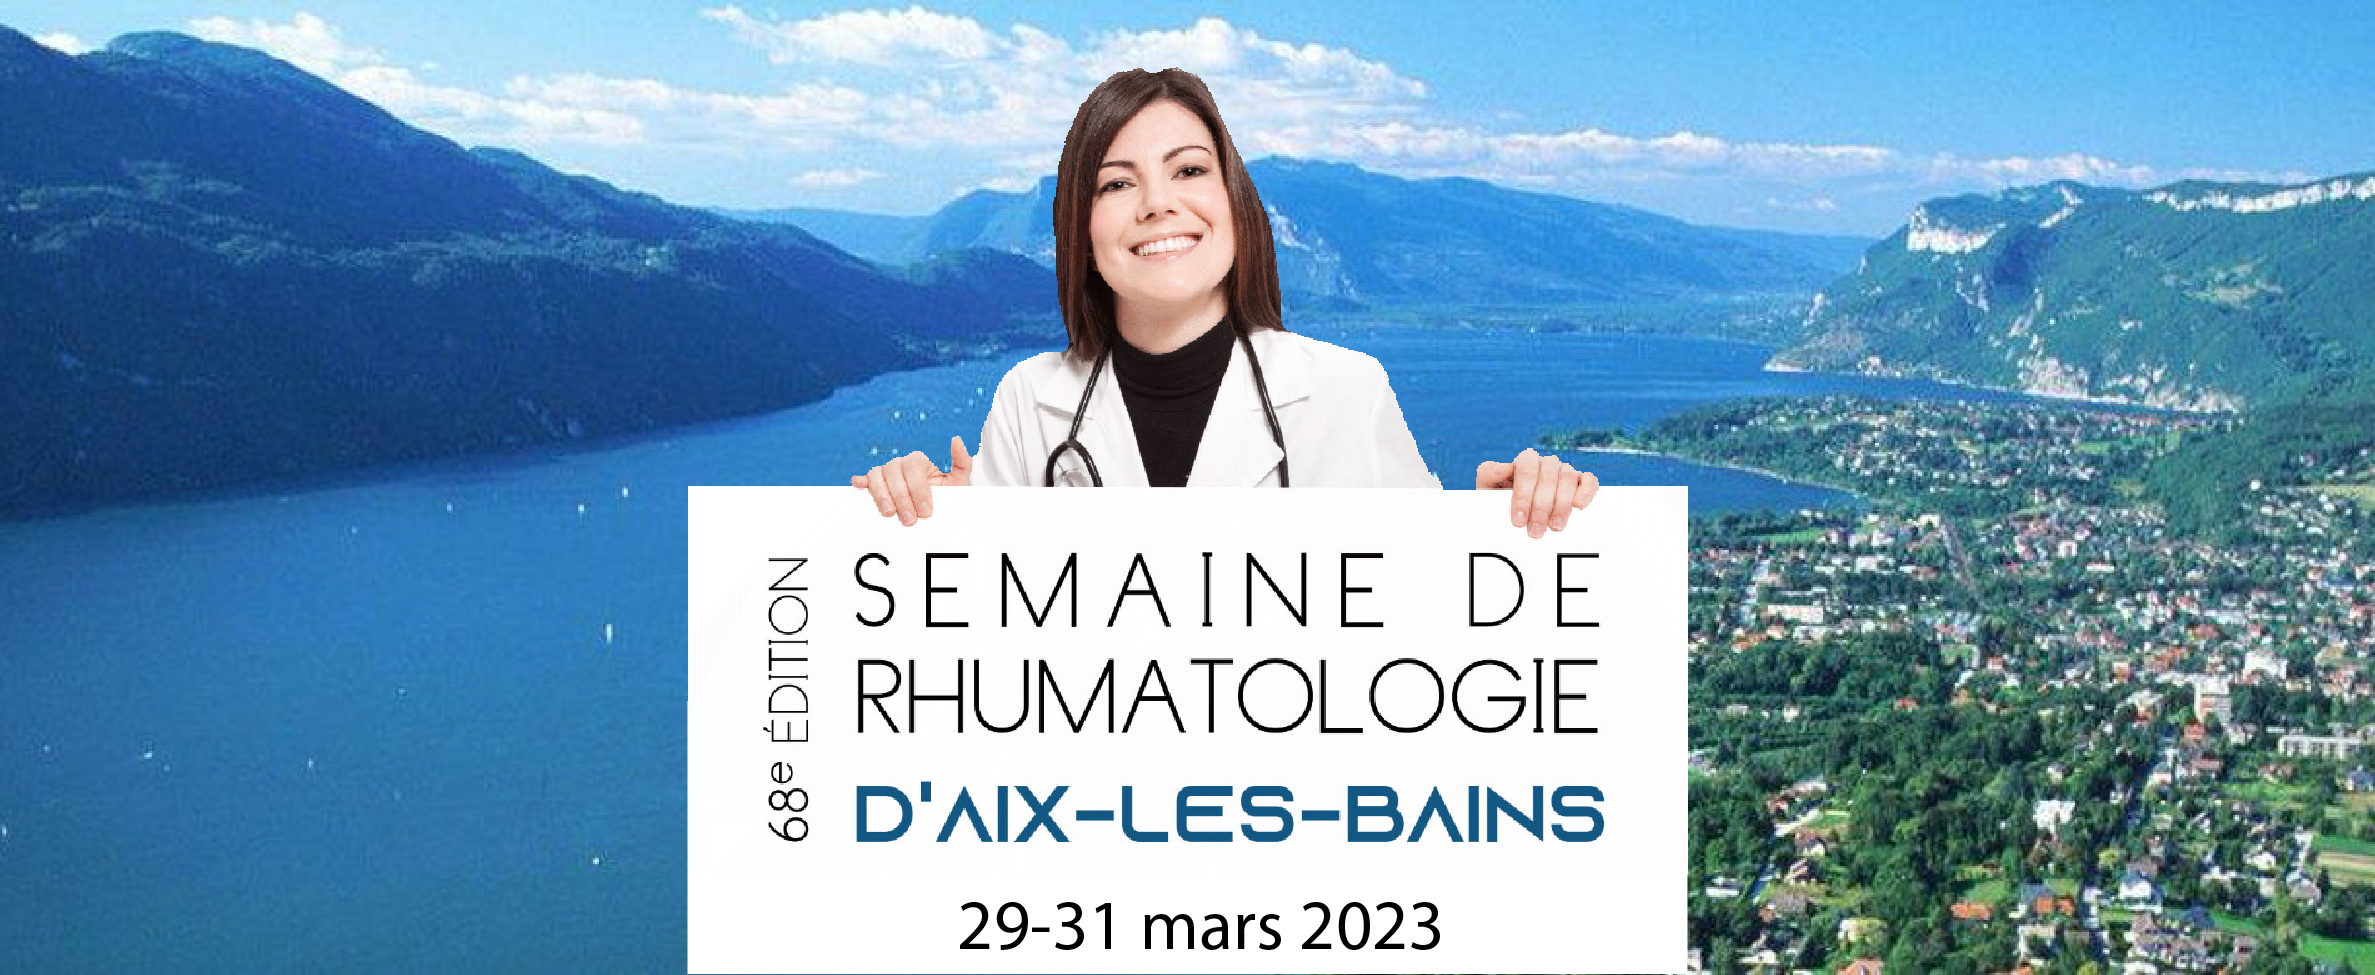 Semaine de Rhumatologie d’Aix-les-Bains 2023